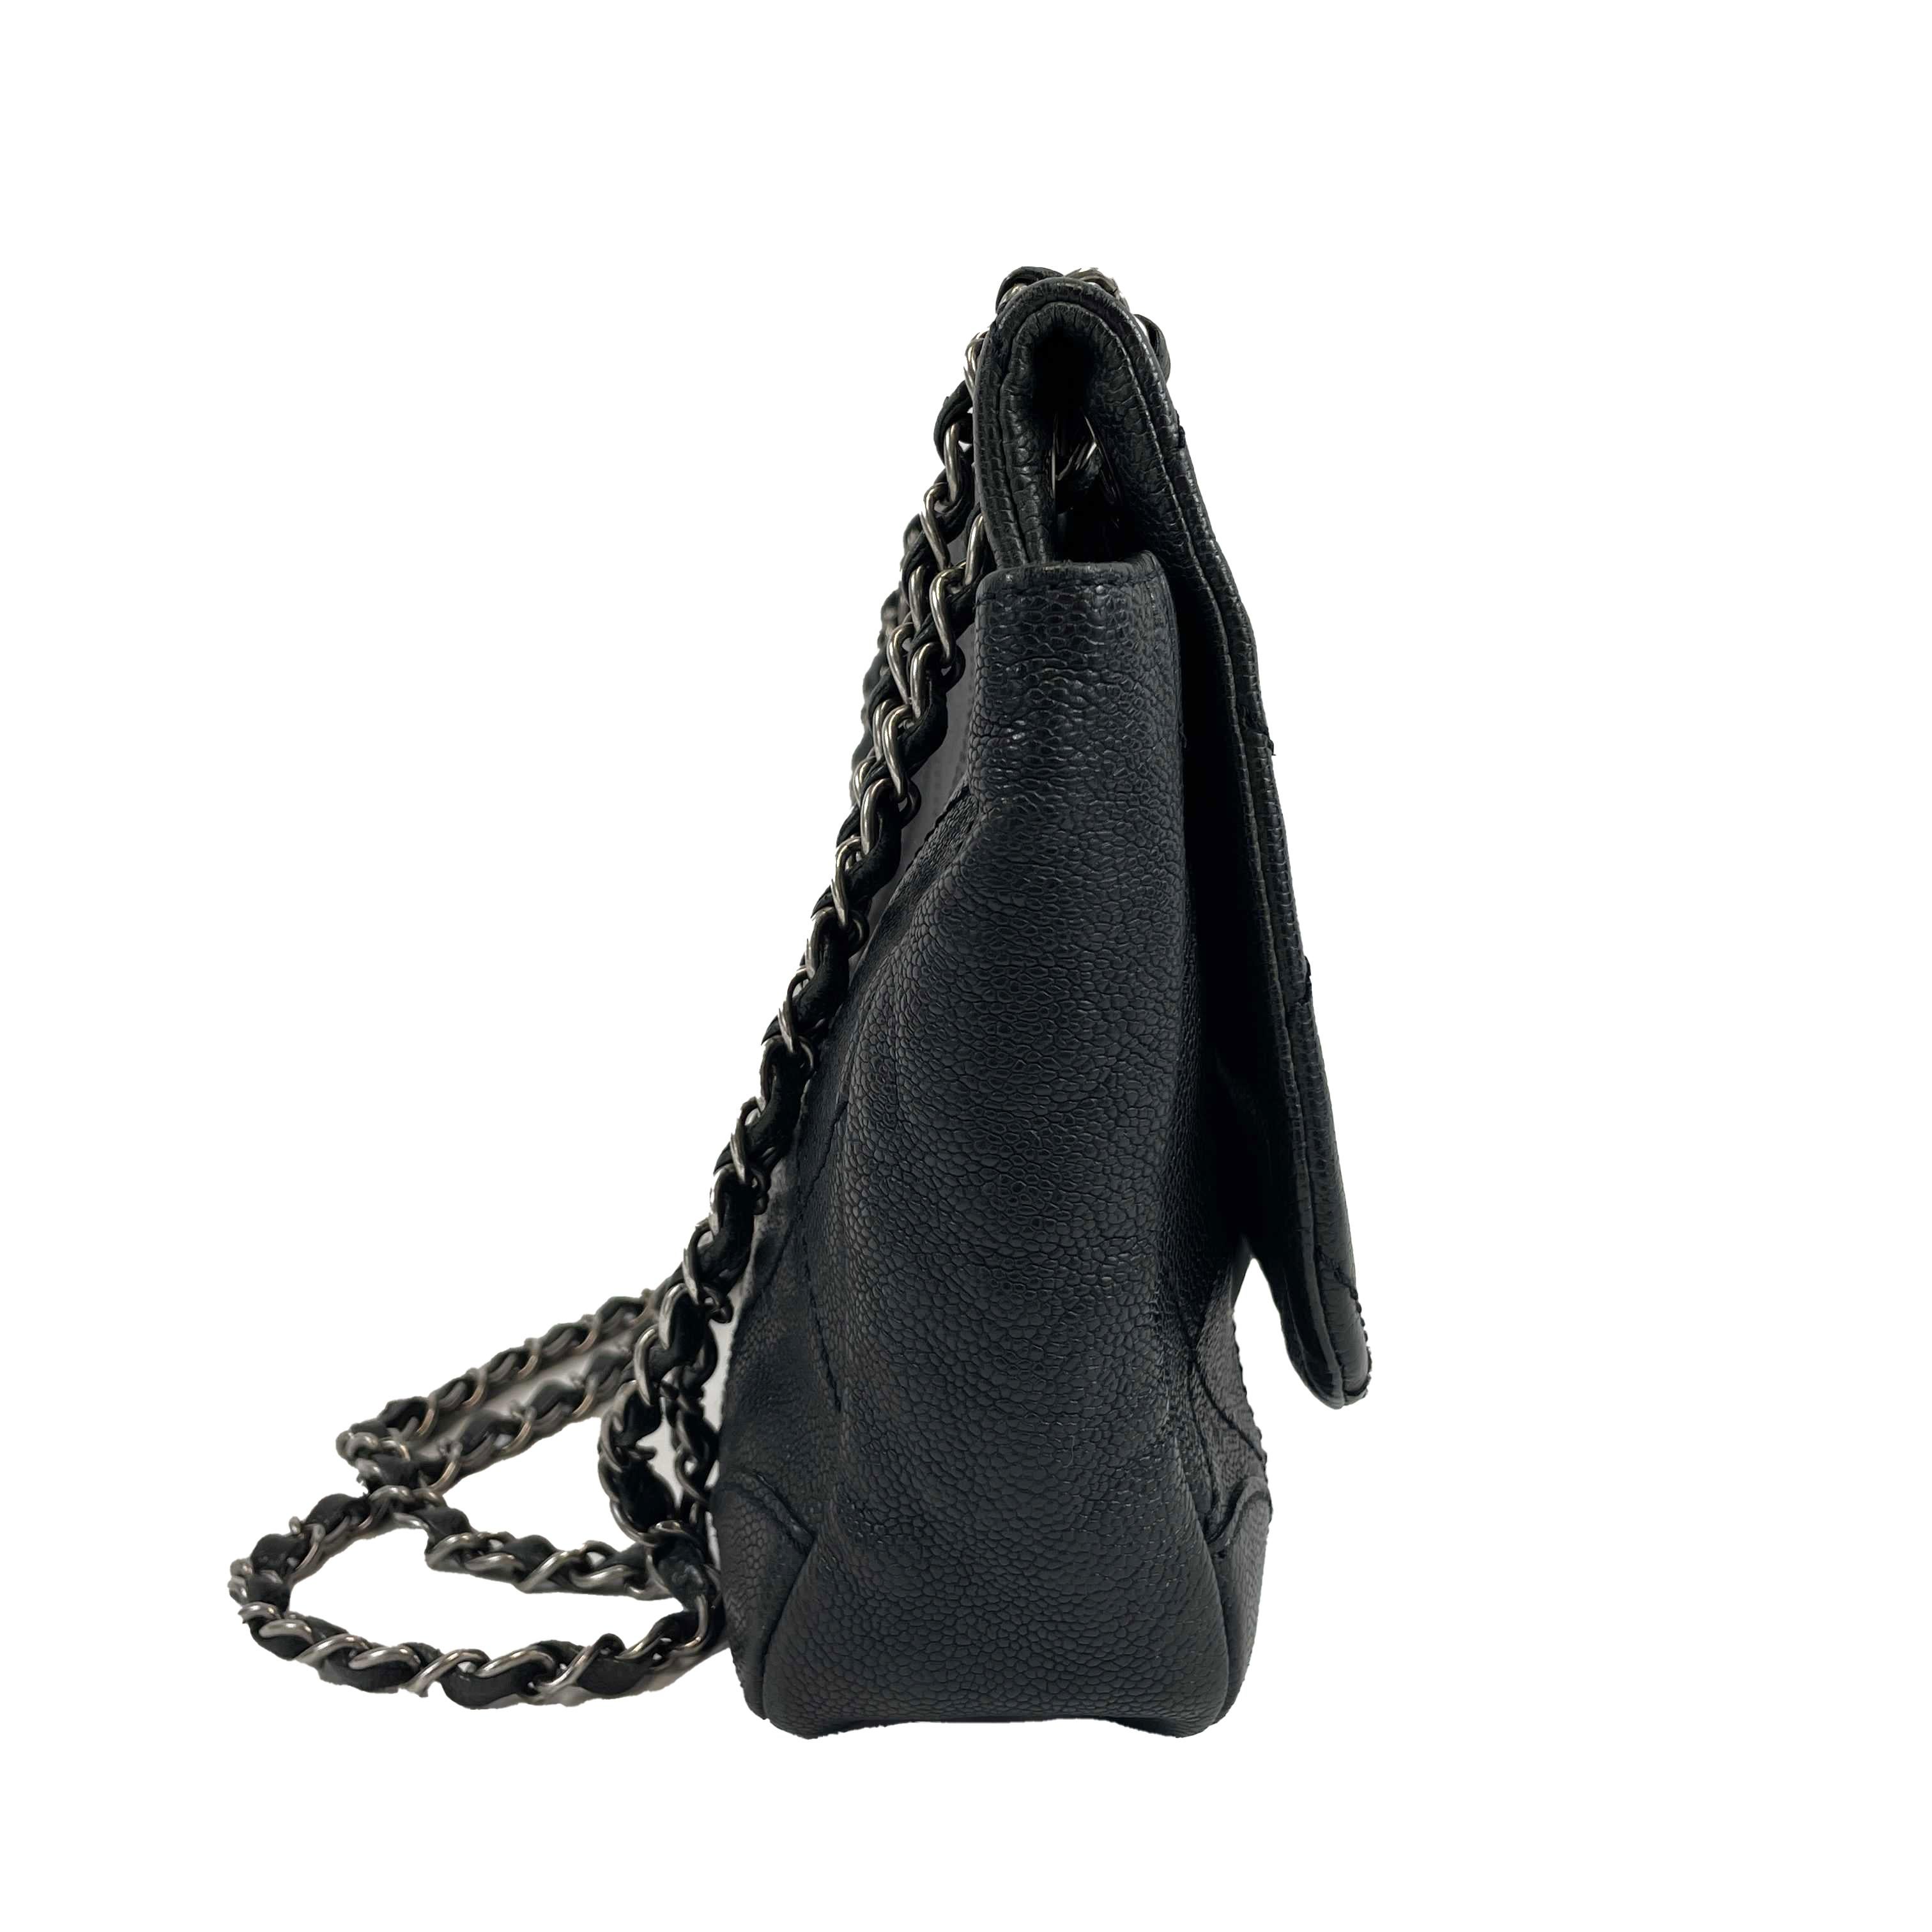 	CHANEL - CC Ligne Flap Large Bag Black / Silver Caviar Leather Shoulder Bag 2